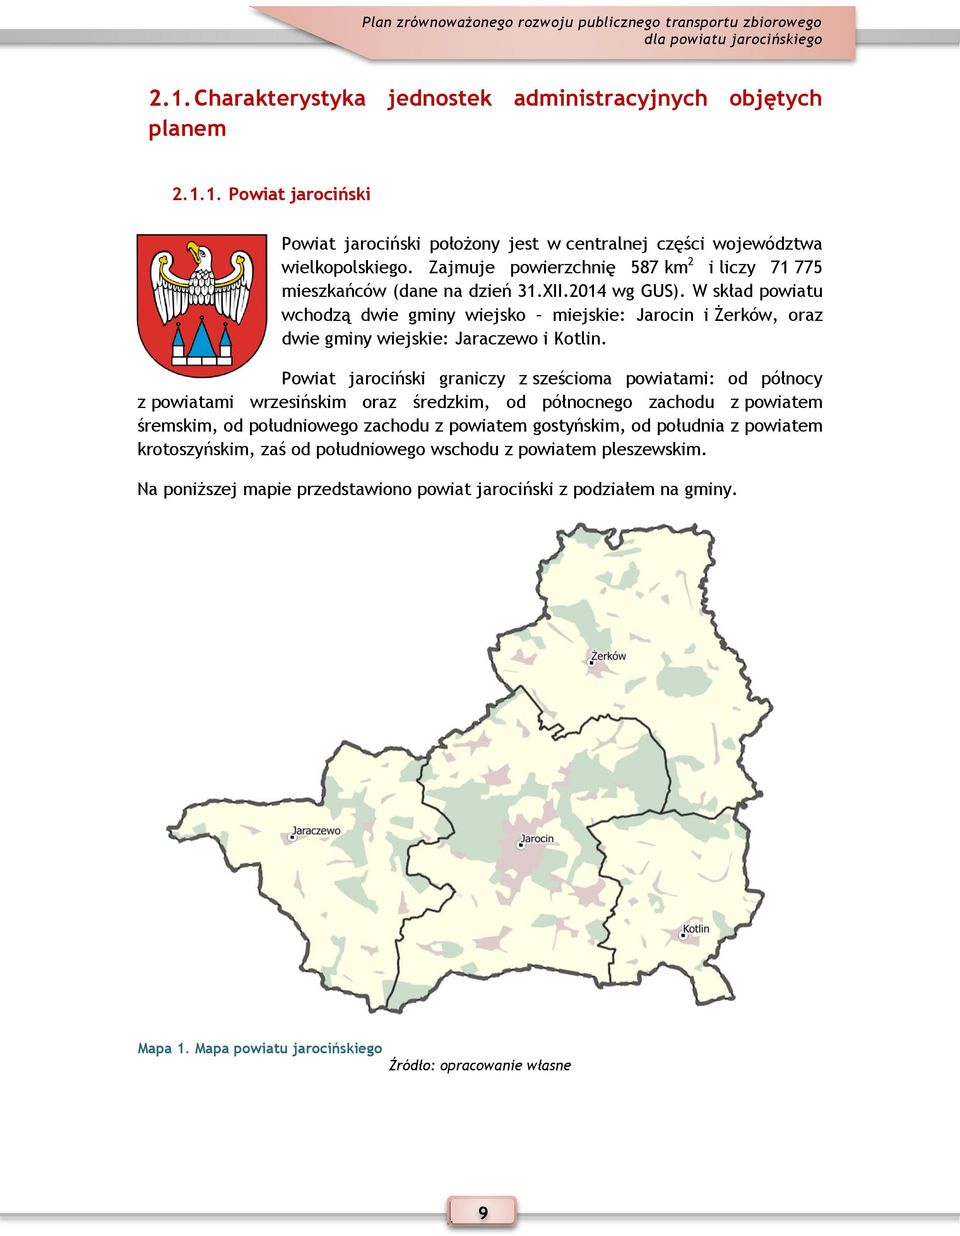 W skład powiatu wchodzą dwie gminy wiejsko miejskie: Jarocin i Żerków, oraz dwie gminy wiejskie: Jaraczewo i Kotlin.